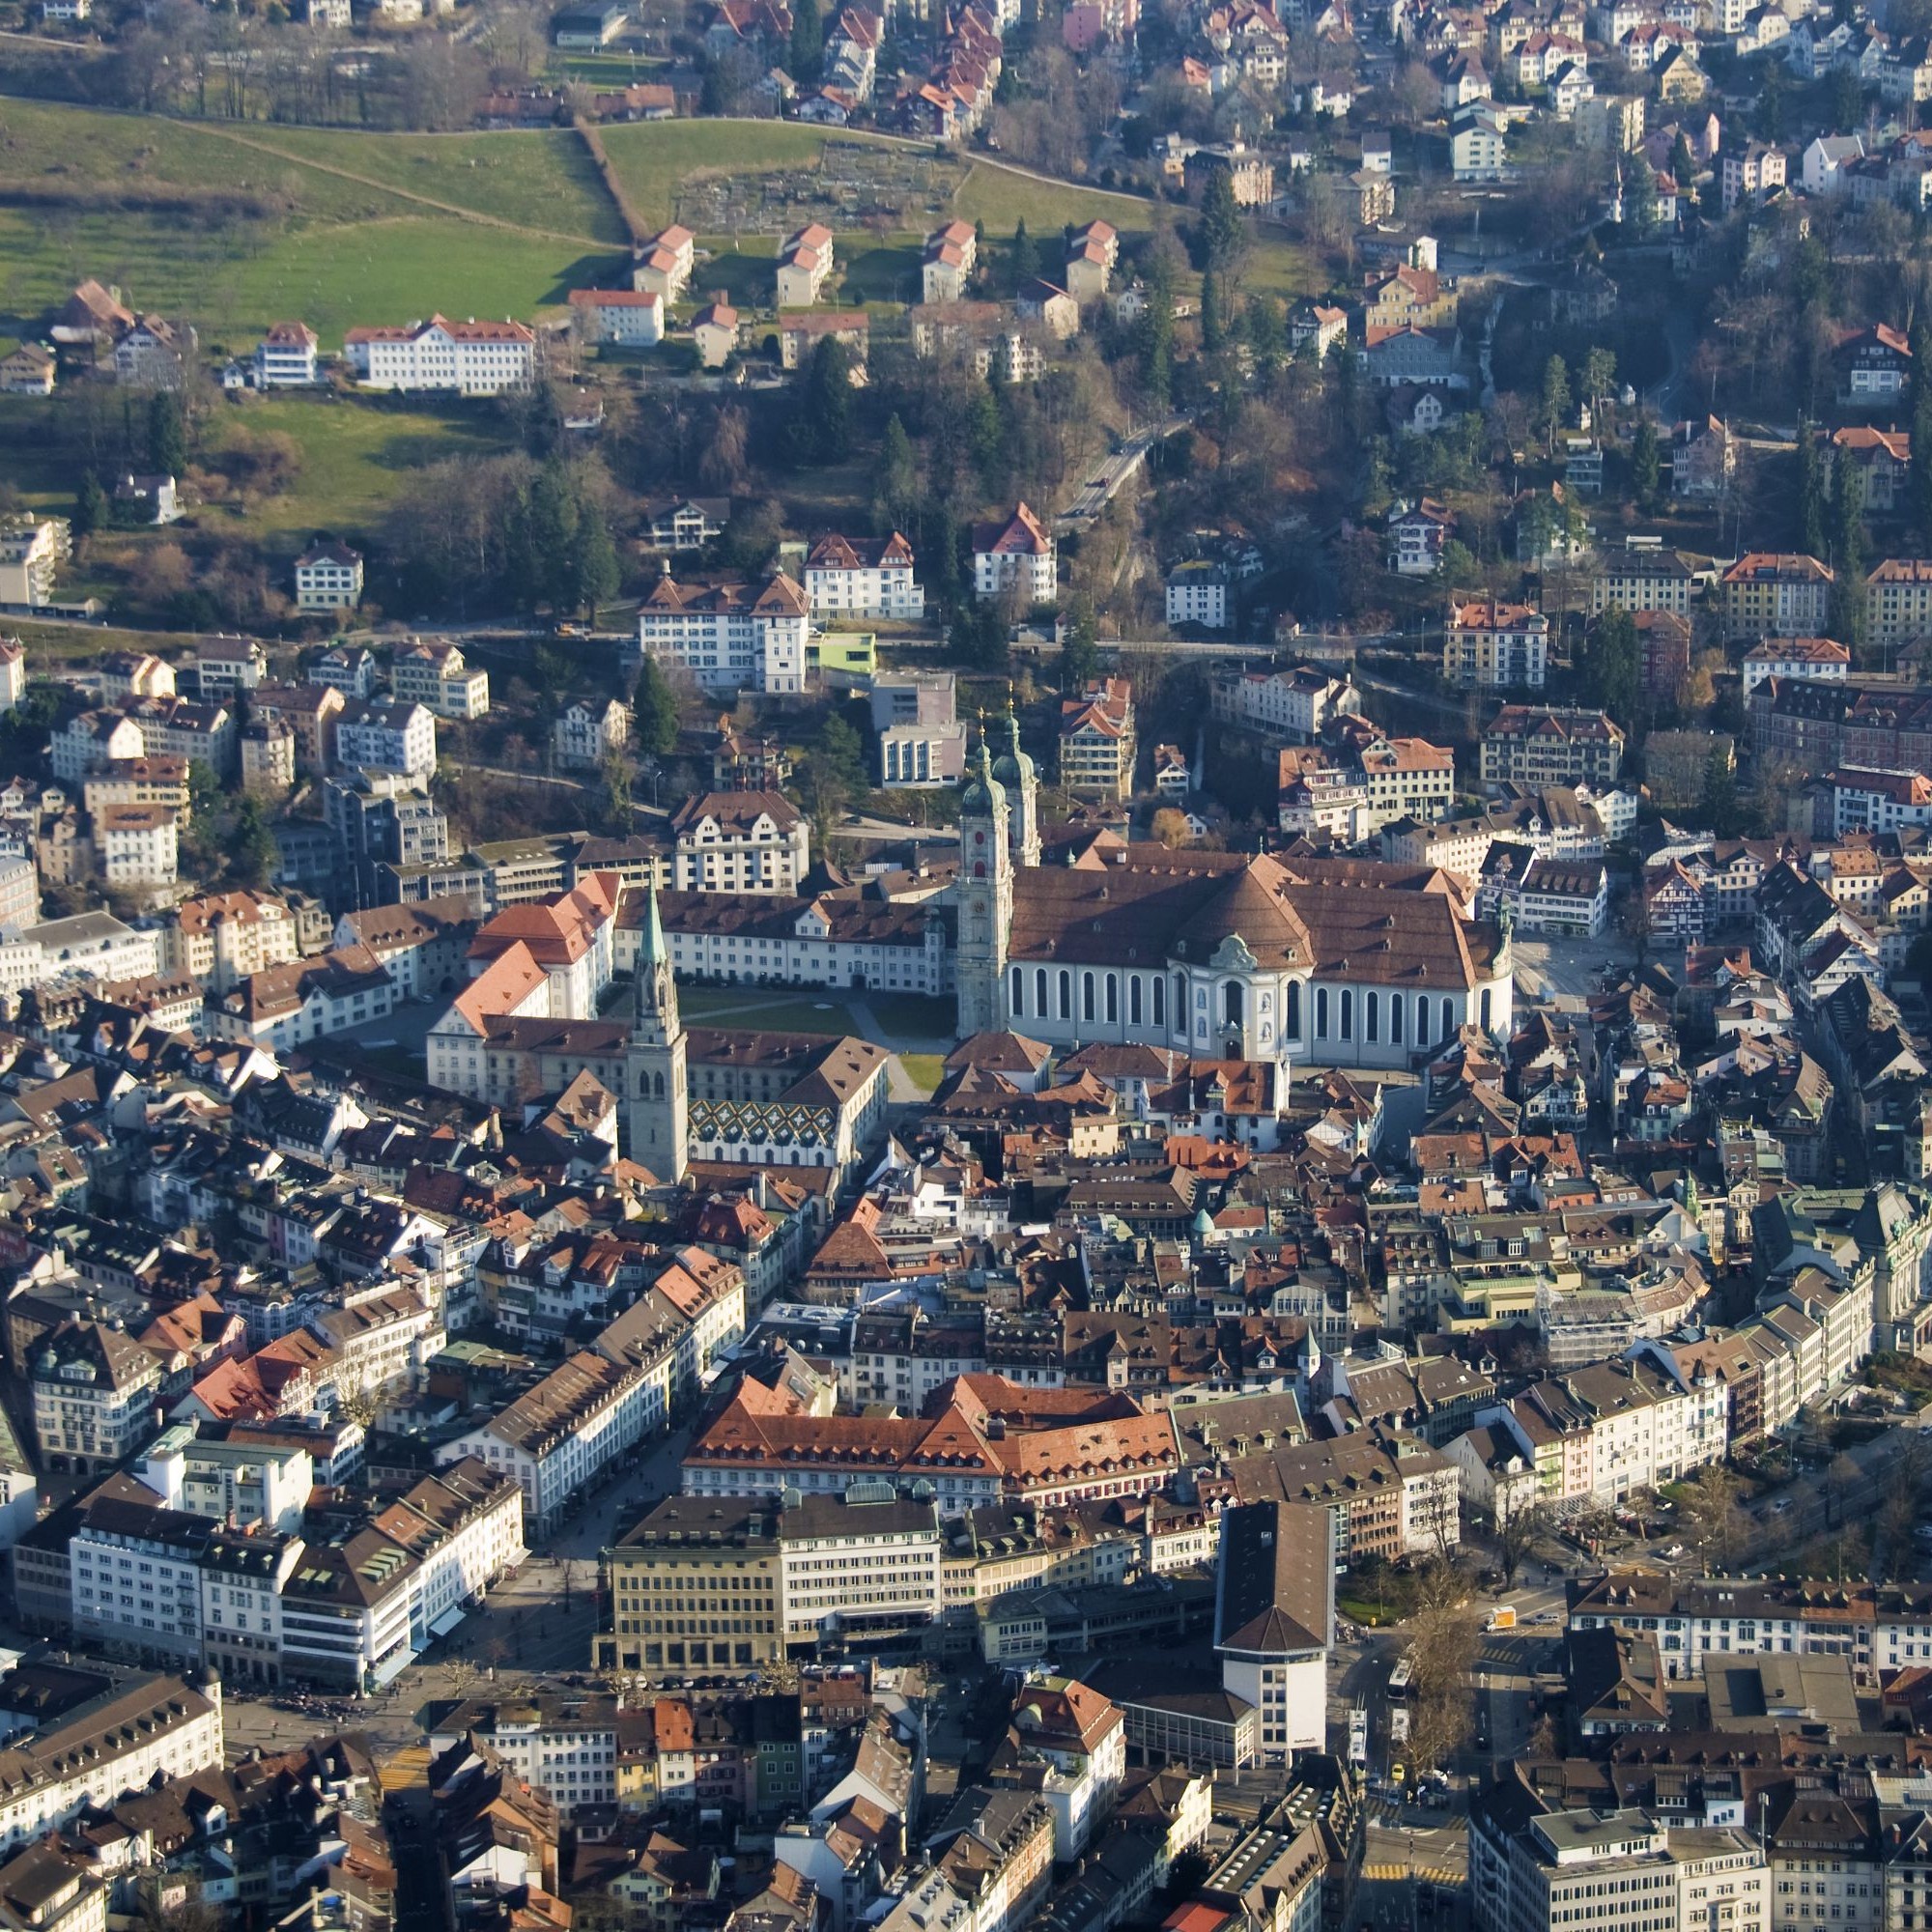 Klosterbezirk St. Gallen